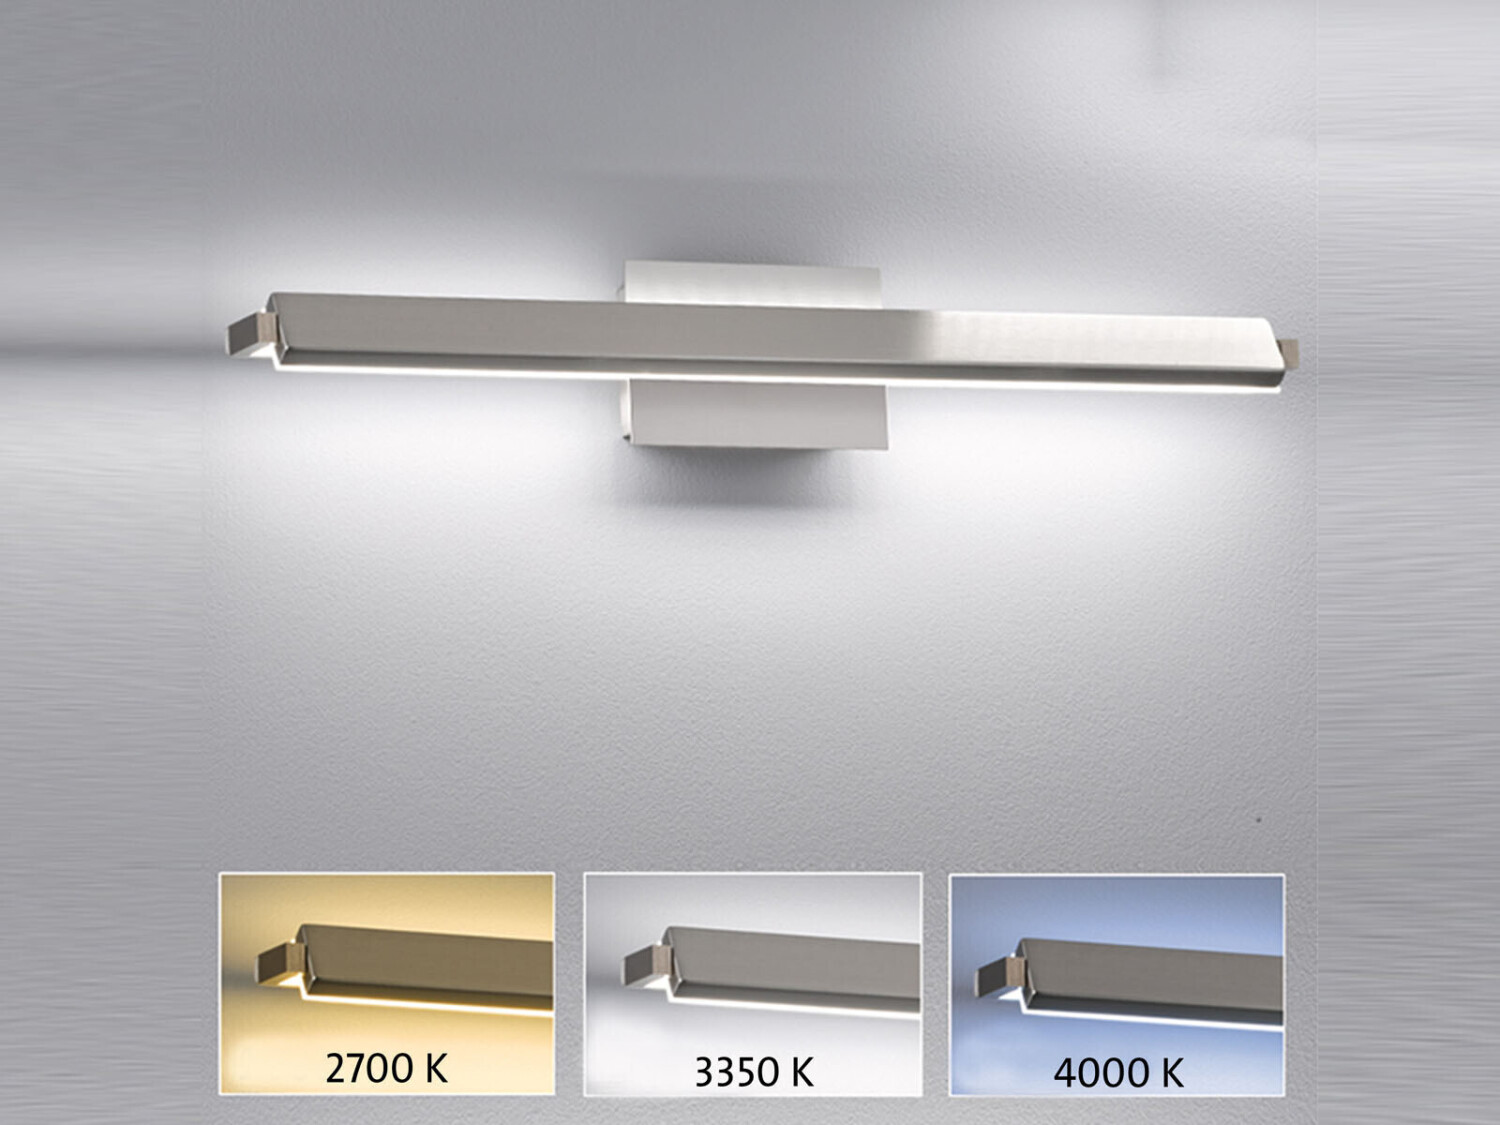 Fischer & Honsel LED Wandleuchten 2er Set Silber schwenkbar - dimmbar -  Farbwechsel Tunable White ab 328,99 € | Preisvergleich bei